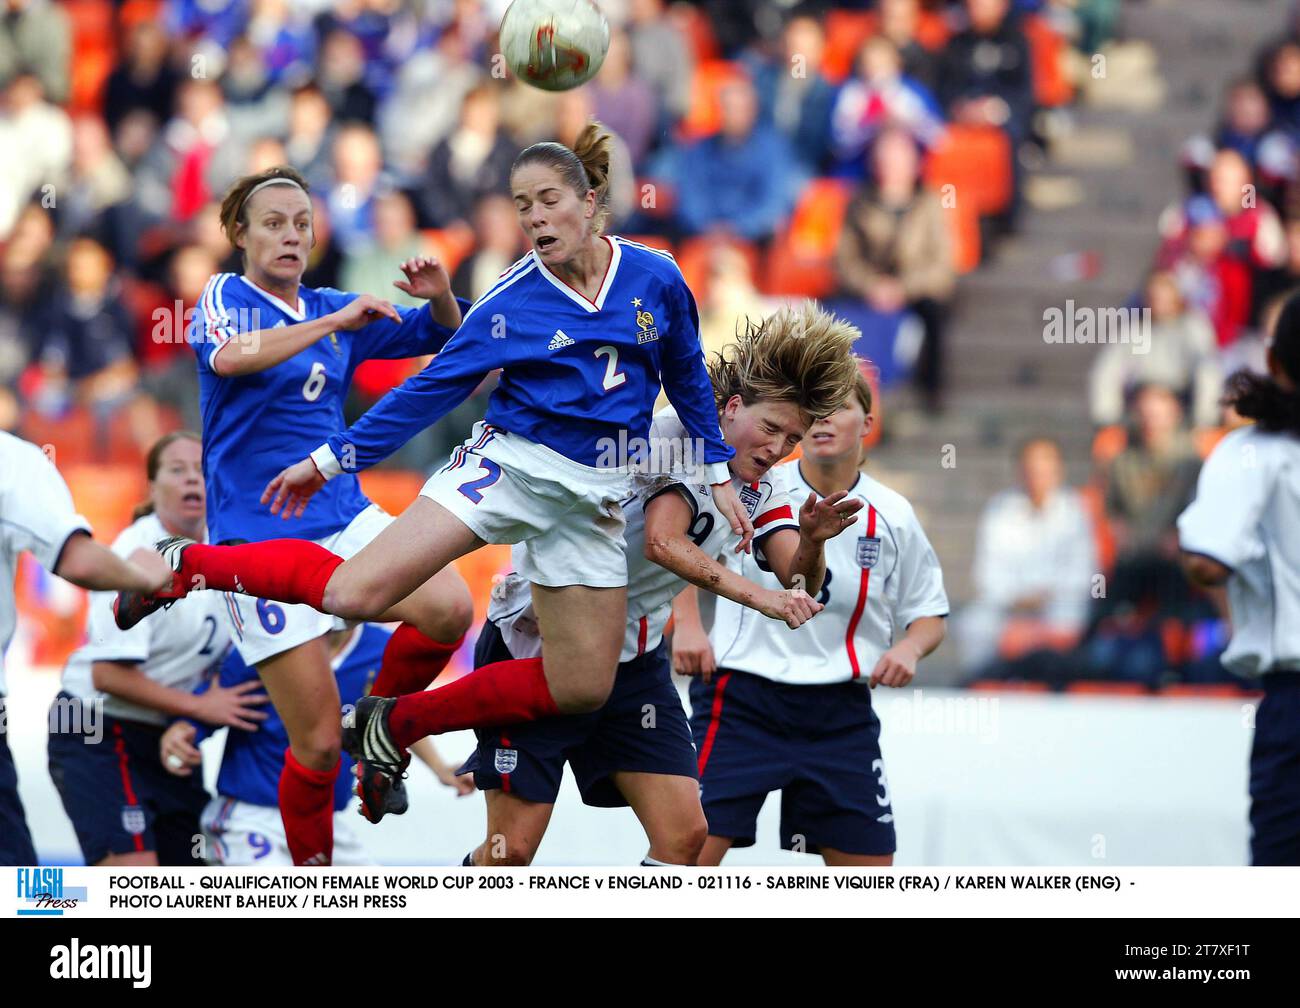 FOOTBALL - QUALIFICATION FEMALE WORLD CUP 2003 - FRANCE v ENGLAND - 021116 - SABRINE VIQUIER (FRA) / KAREN WALKER (ENG) - PHOTO LAURENT BAHEUX / FLASH PRESS Stock Photo